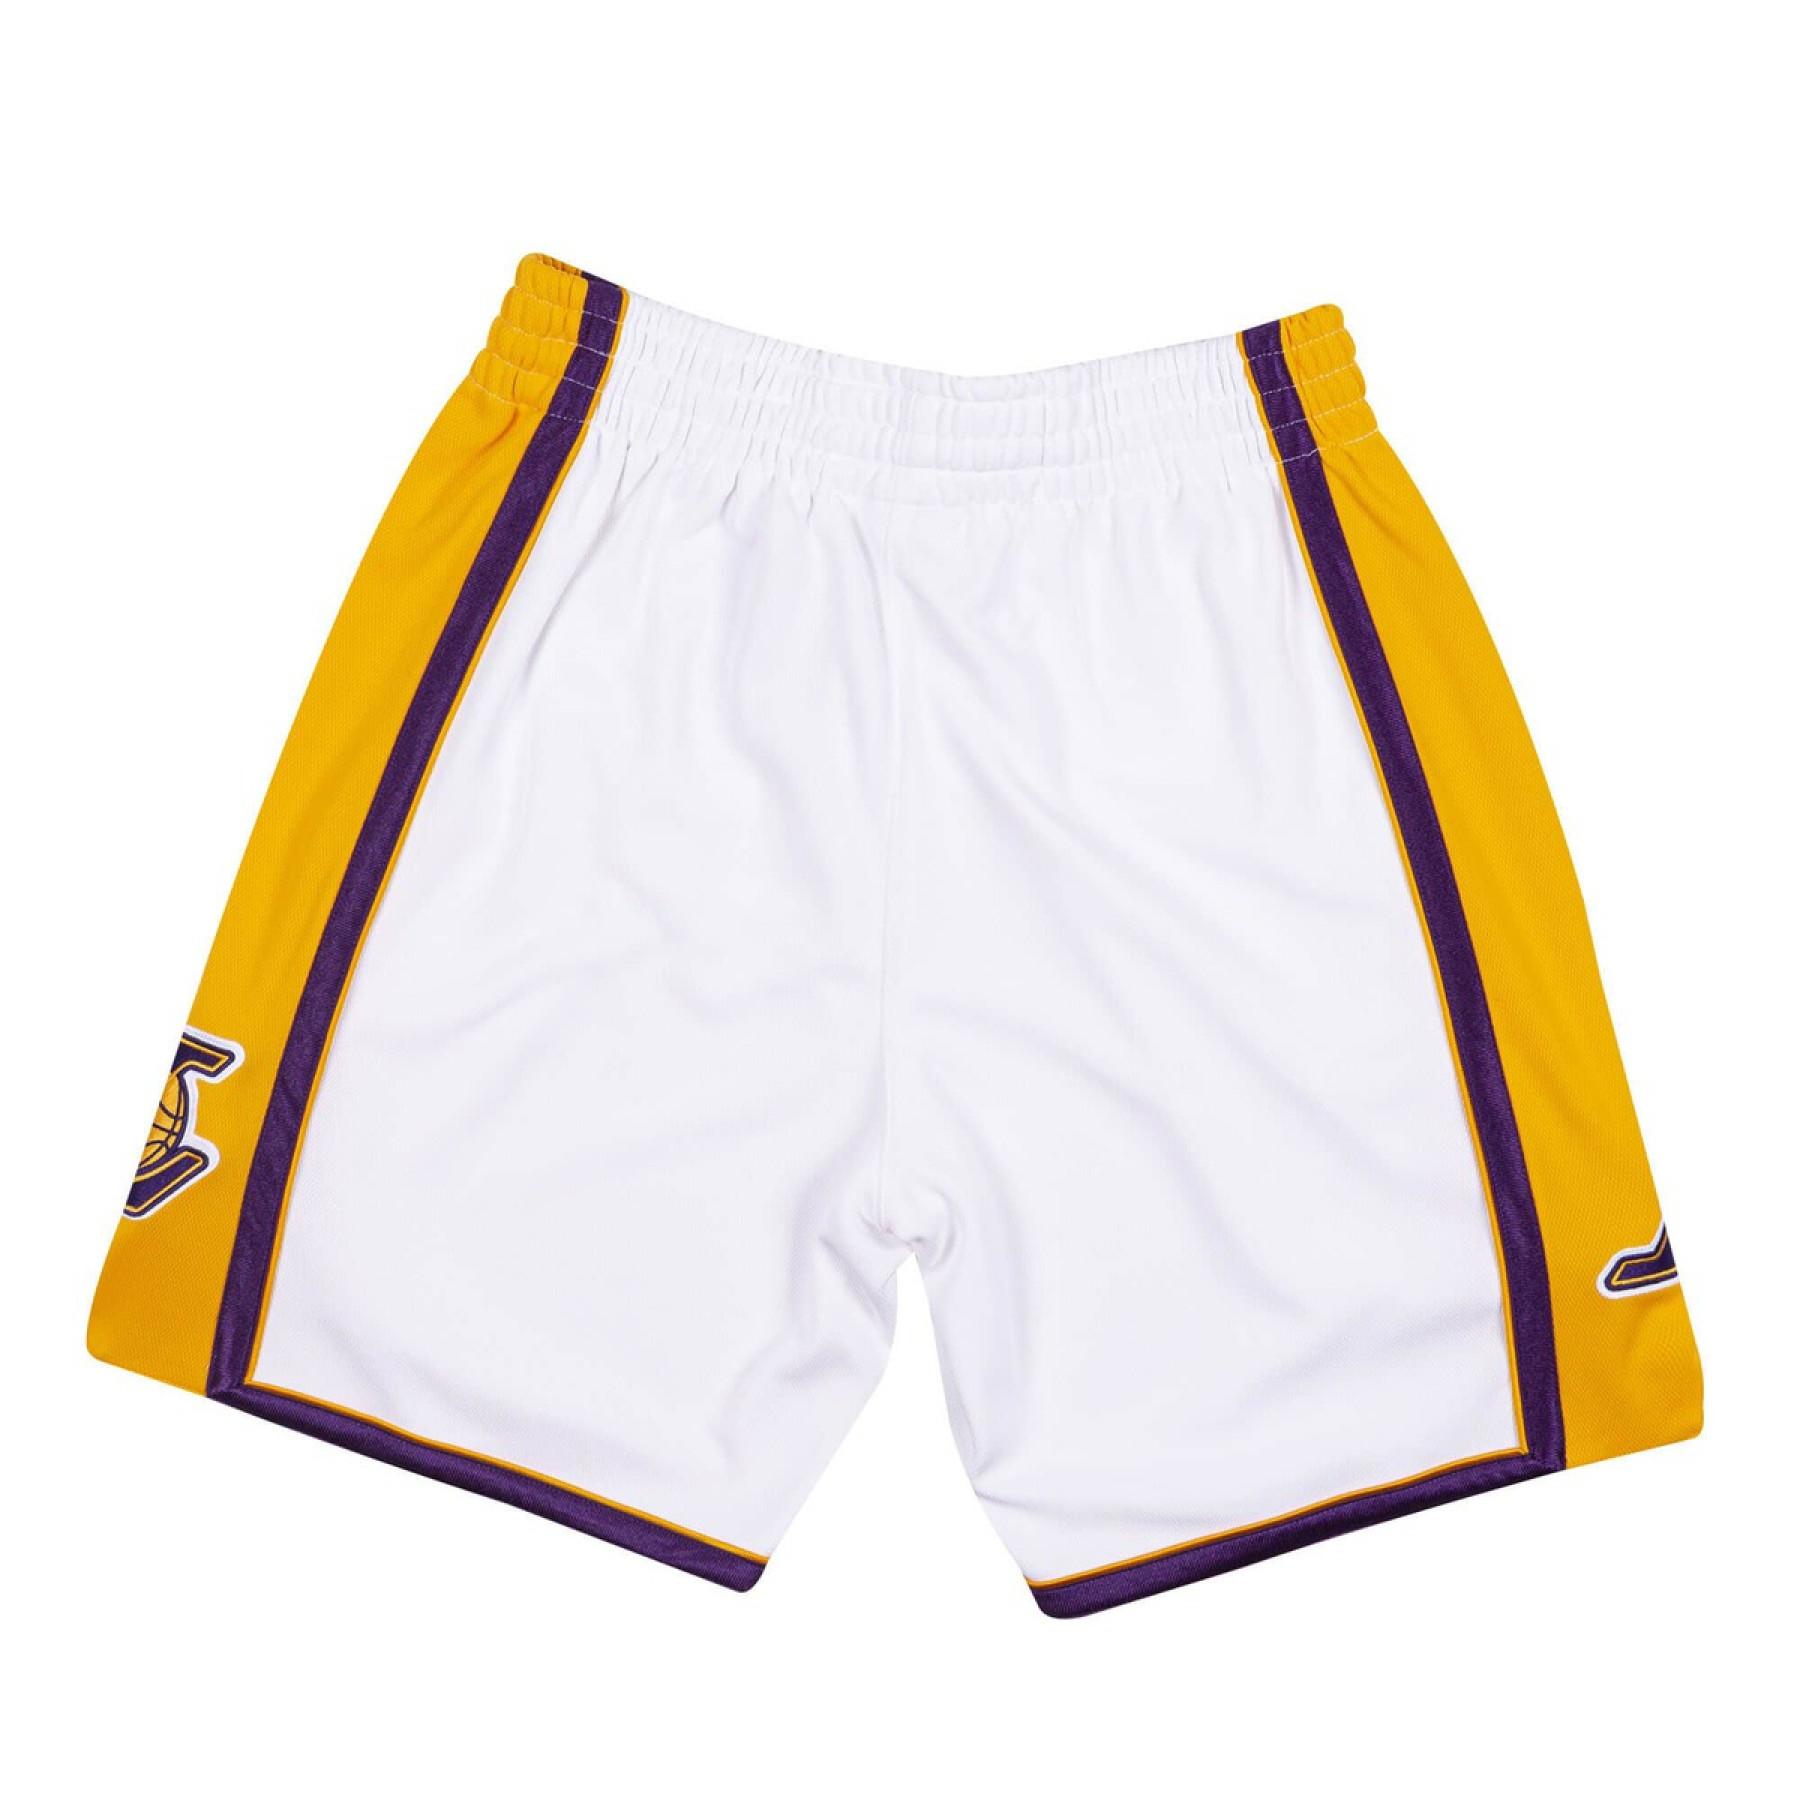 Short authentique Los Angeles Lakers alternate 2009/10